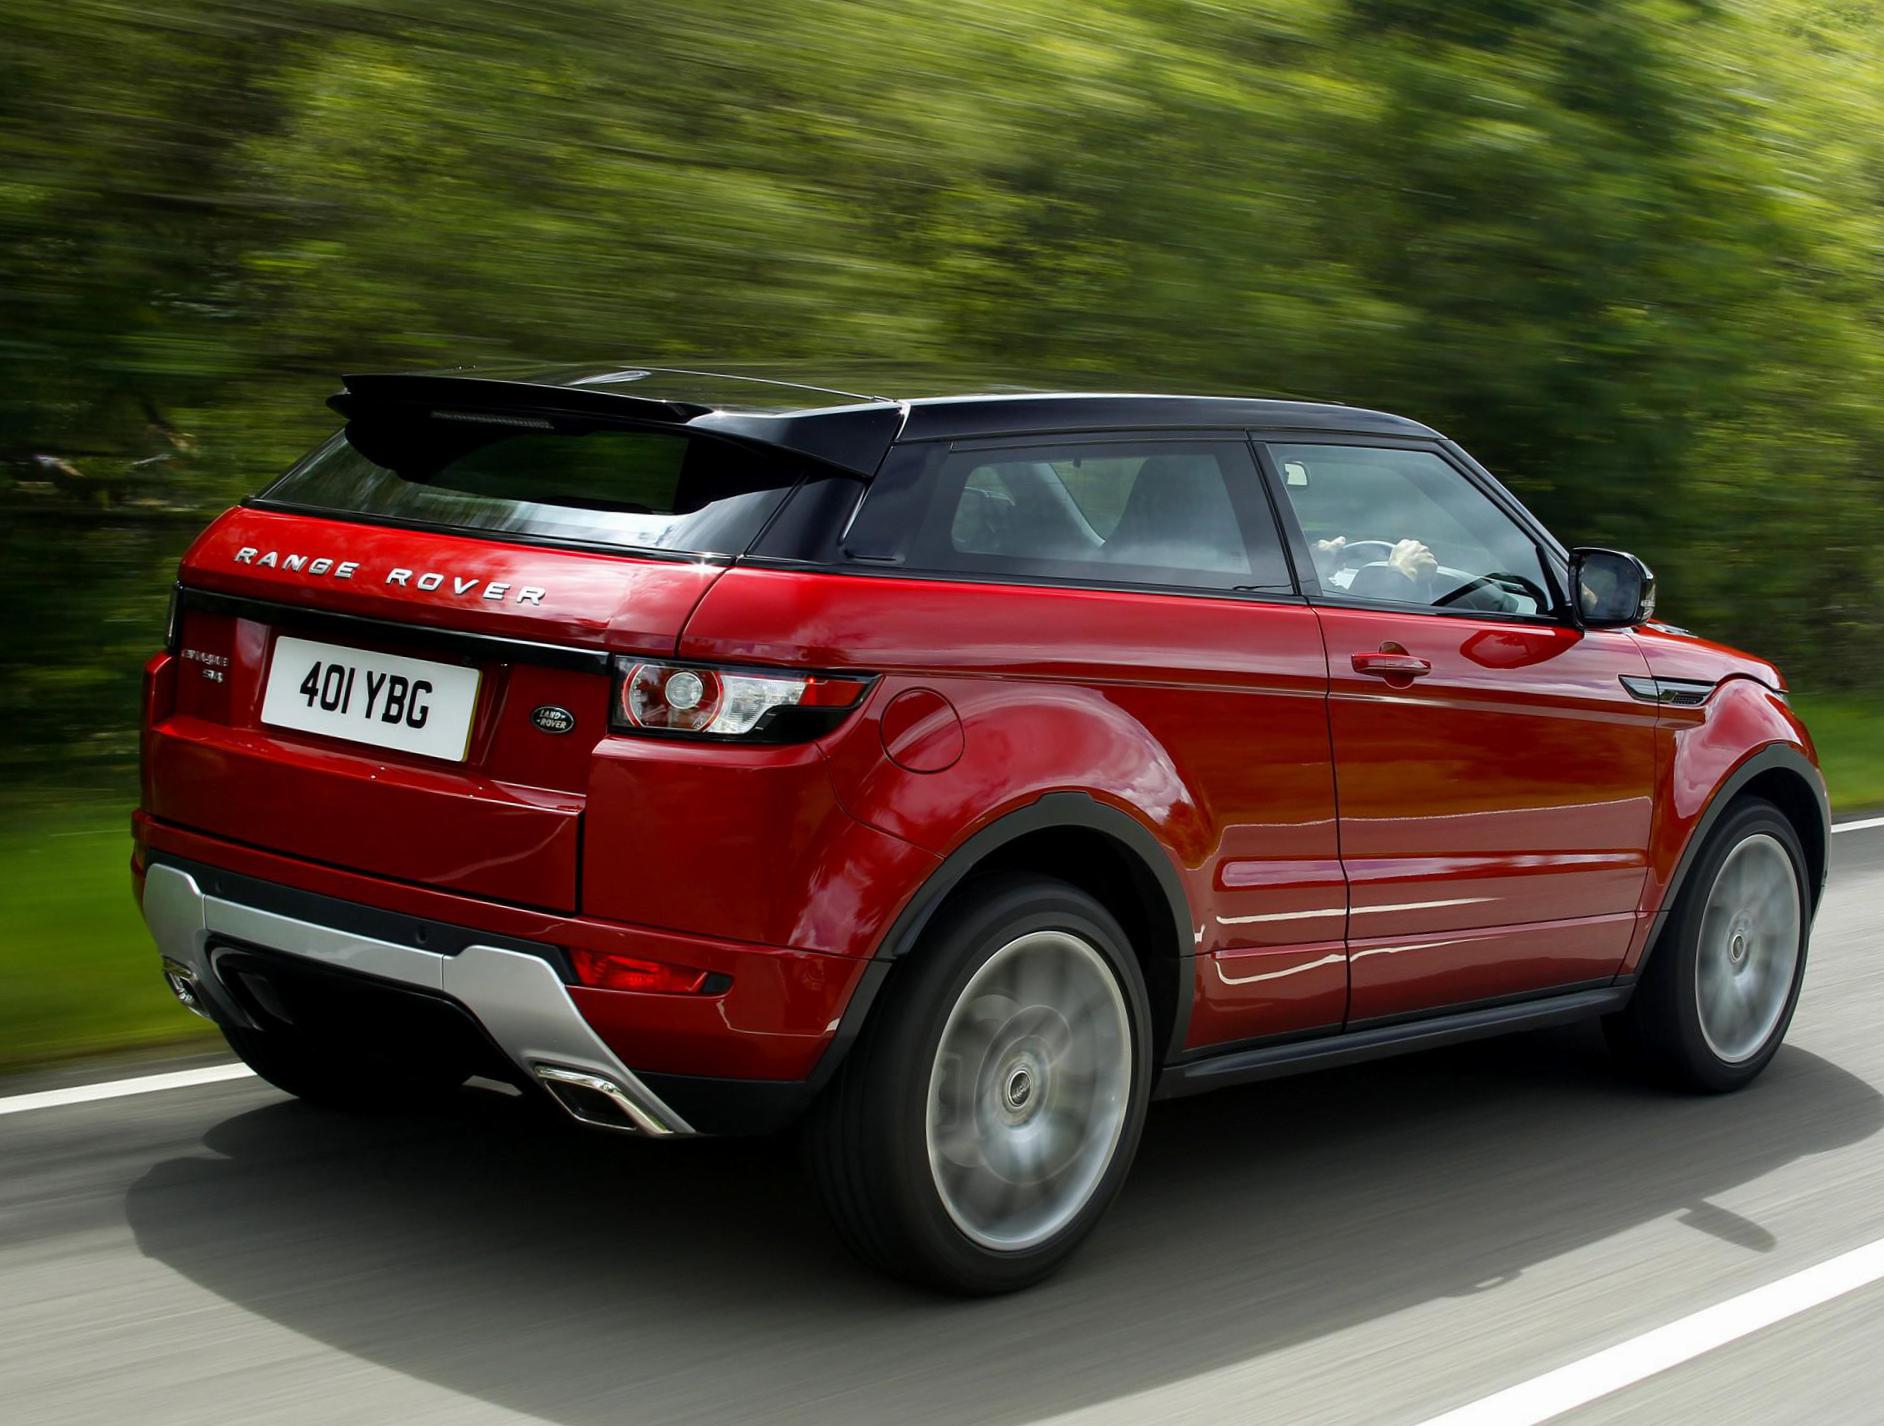 Range Rover Evoque Land Rover Characteristics suv